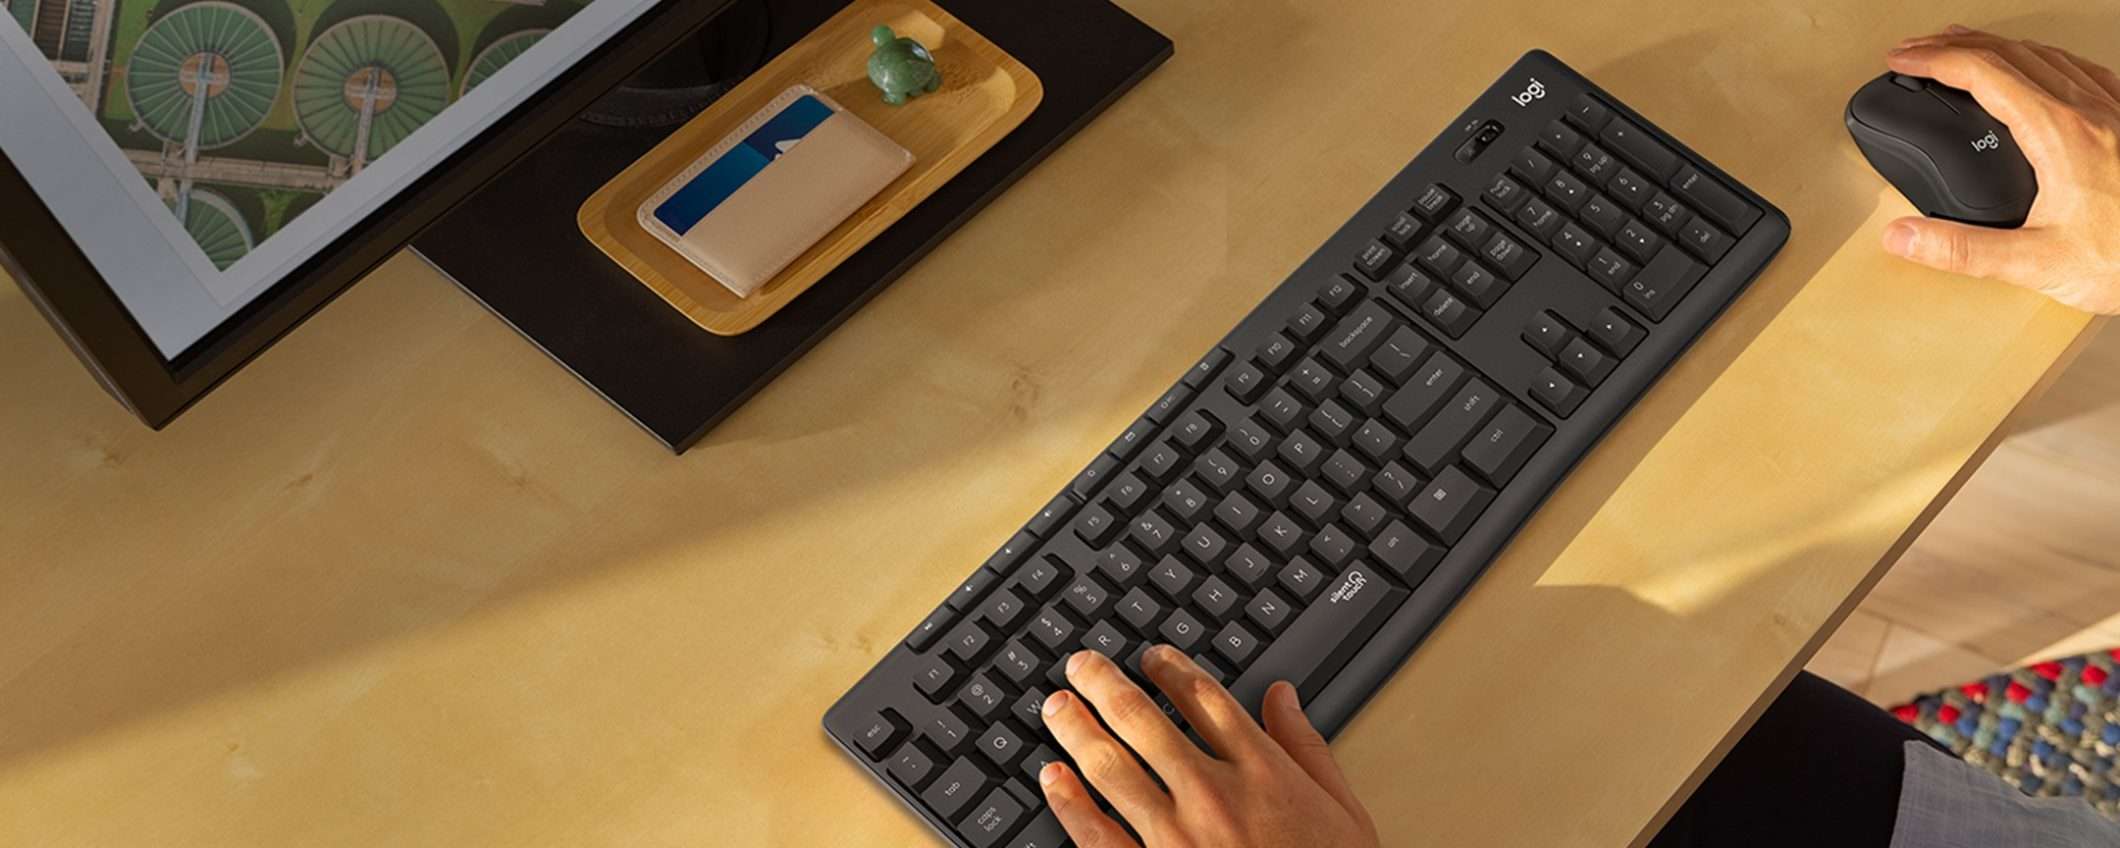 Mouse + tastiera Logitech MK295 a soli 31€ grazie ad Amazon